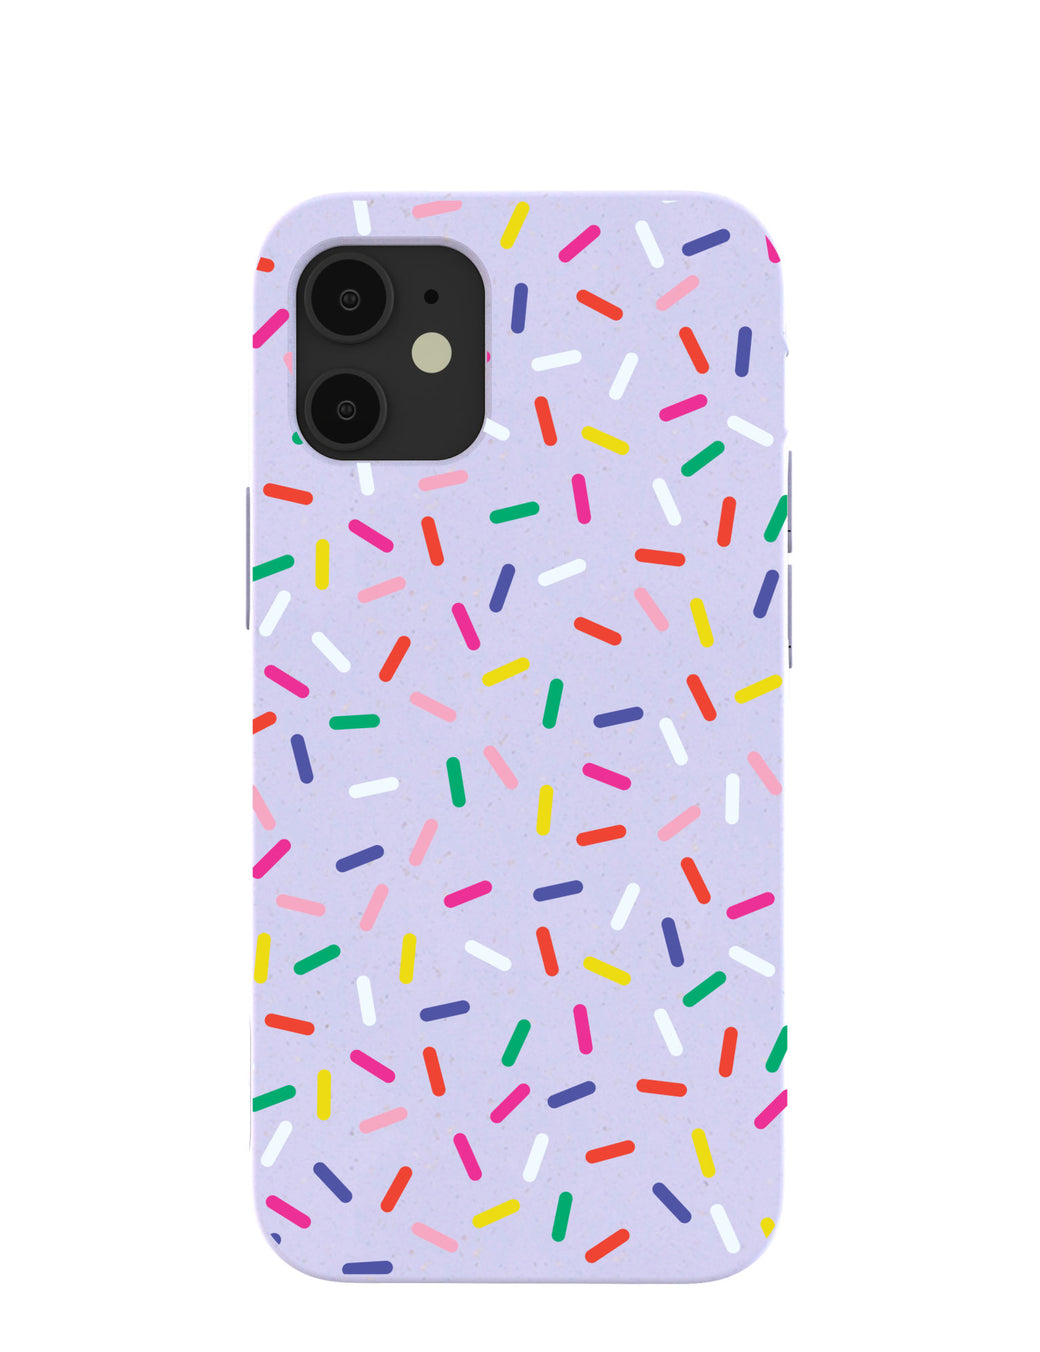 Lavender Sprinkles iPhone 12 Mini Case